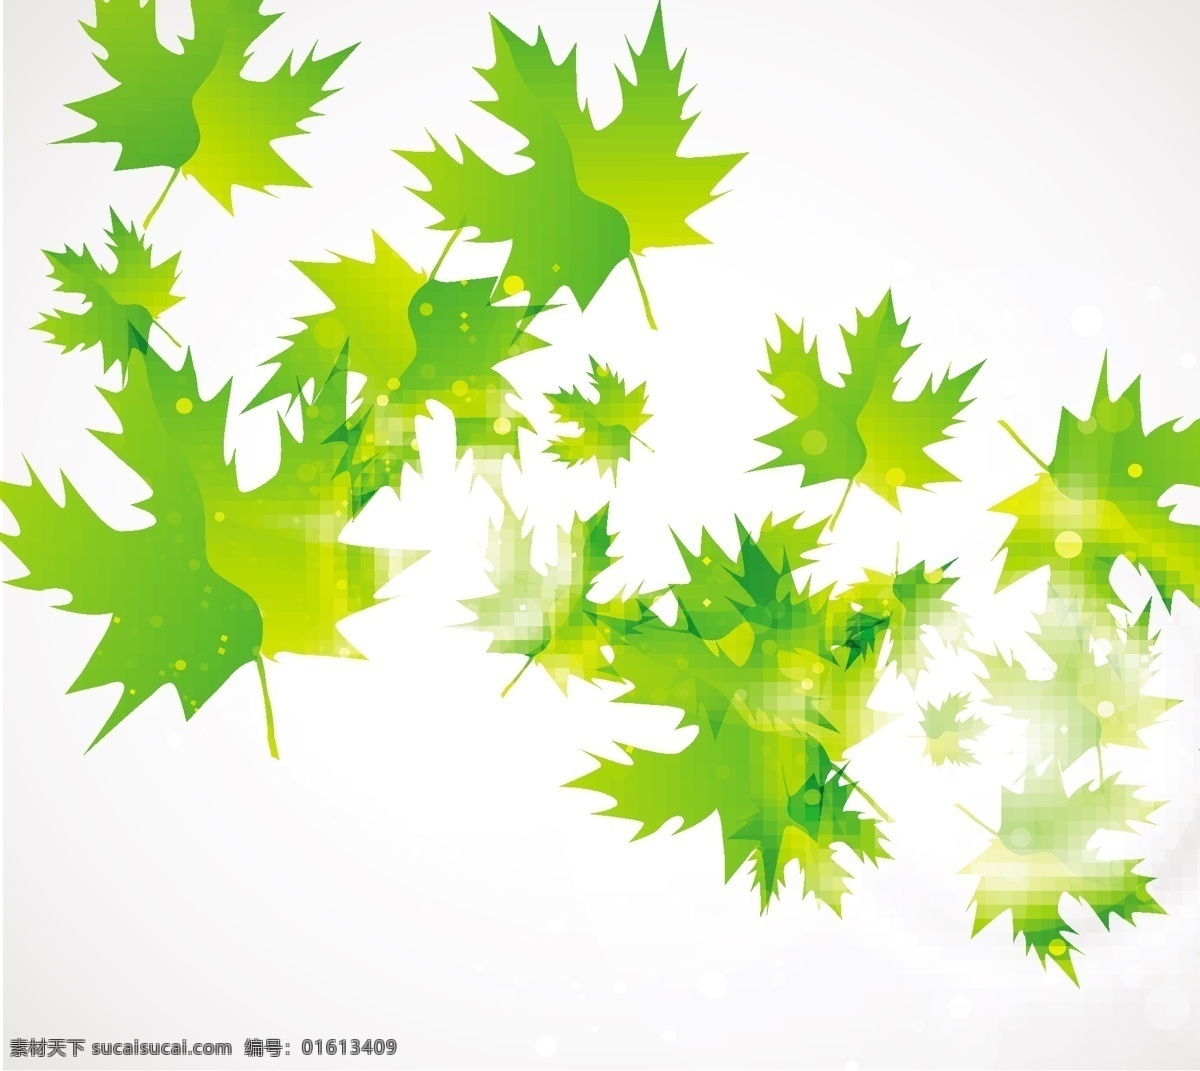 抽象 绿叶 背景 自由 向量 叶子 树叶 枫叶 绿色的叶子 矢量图